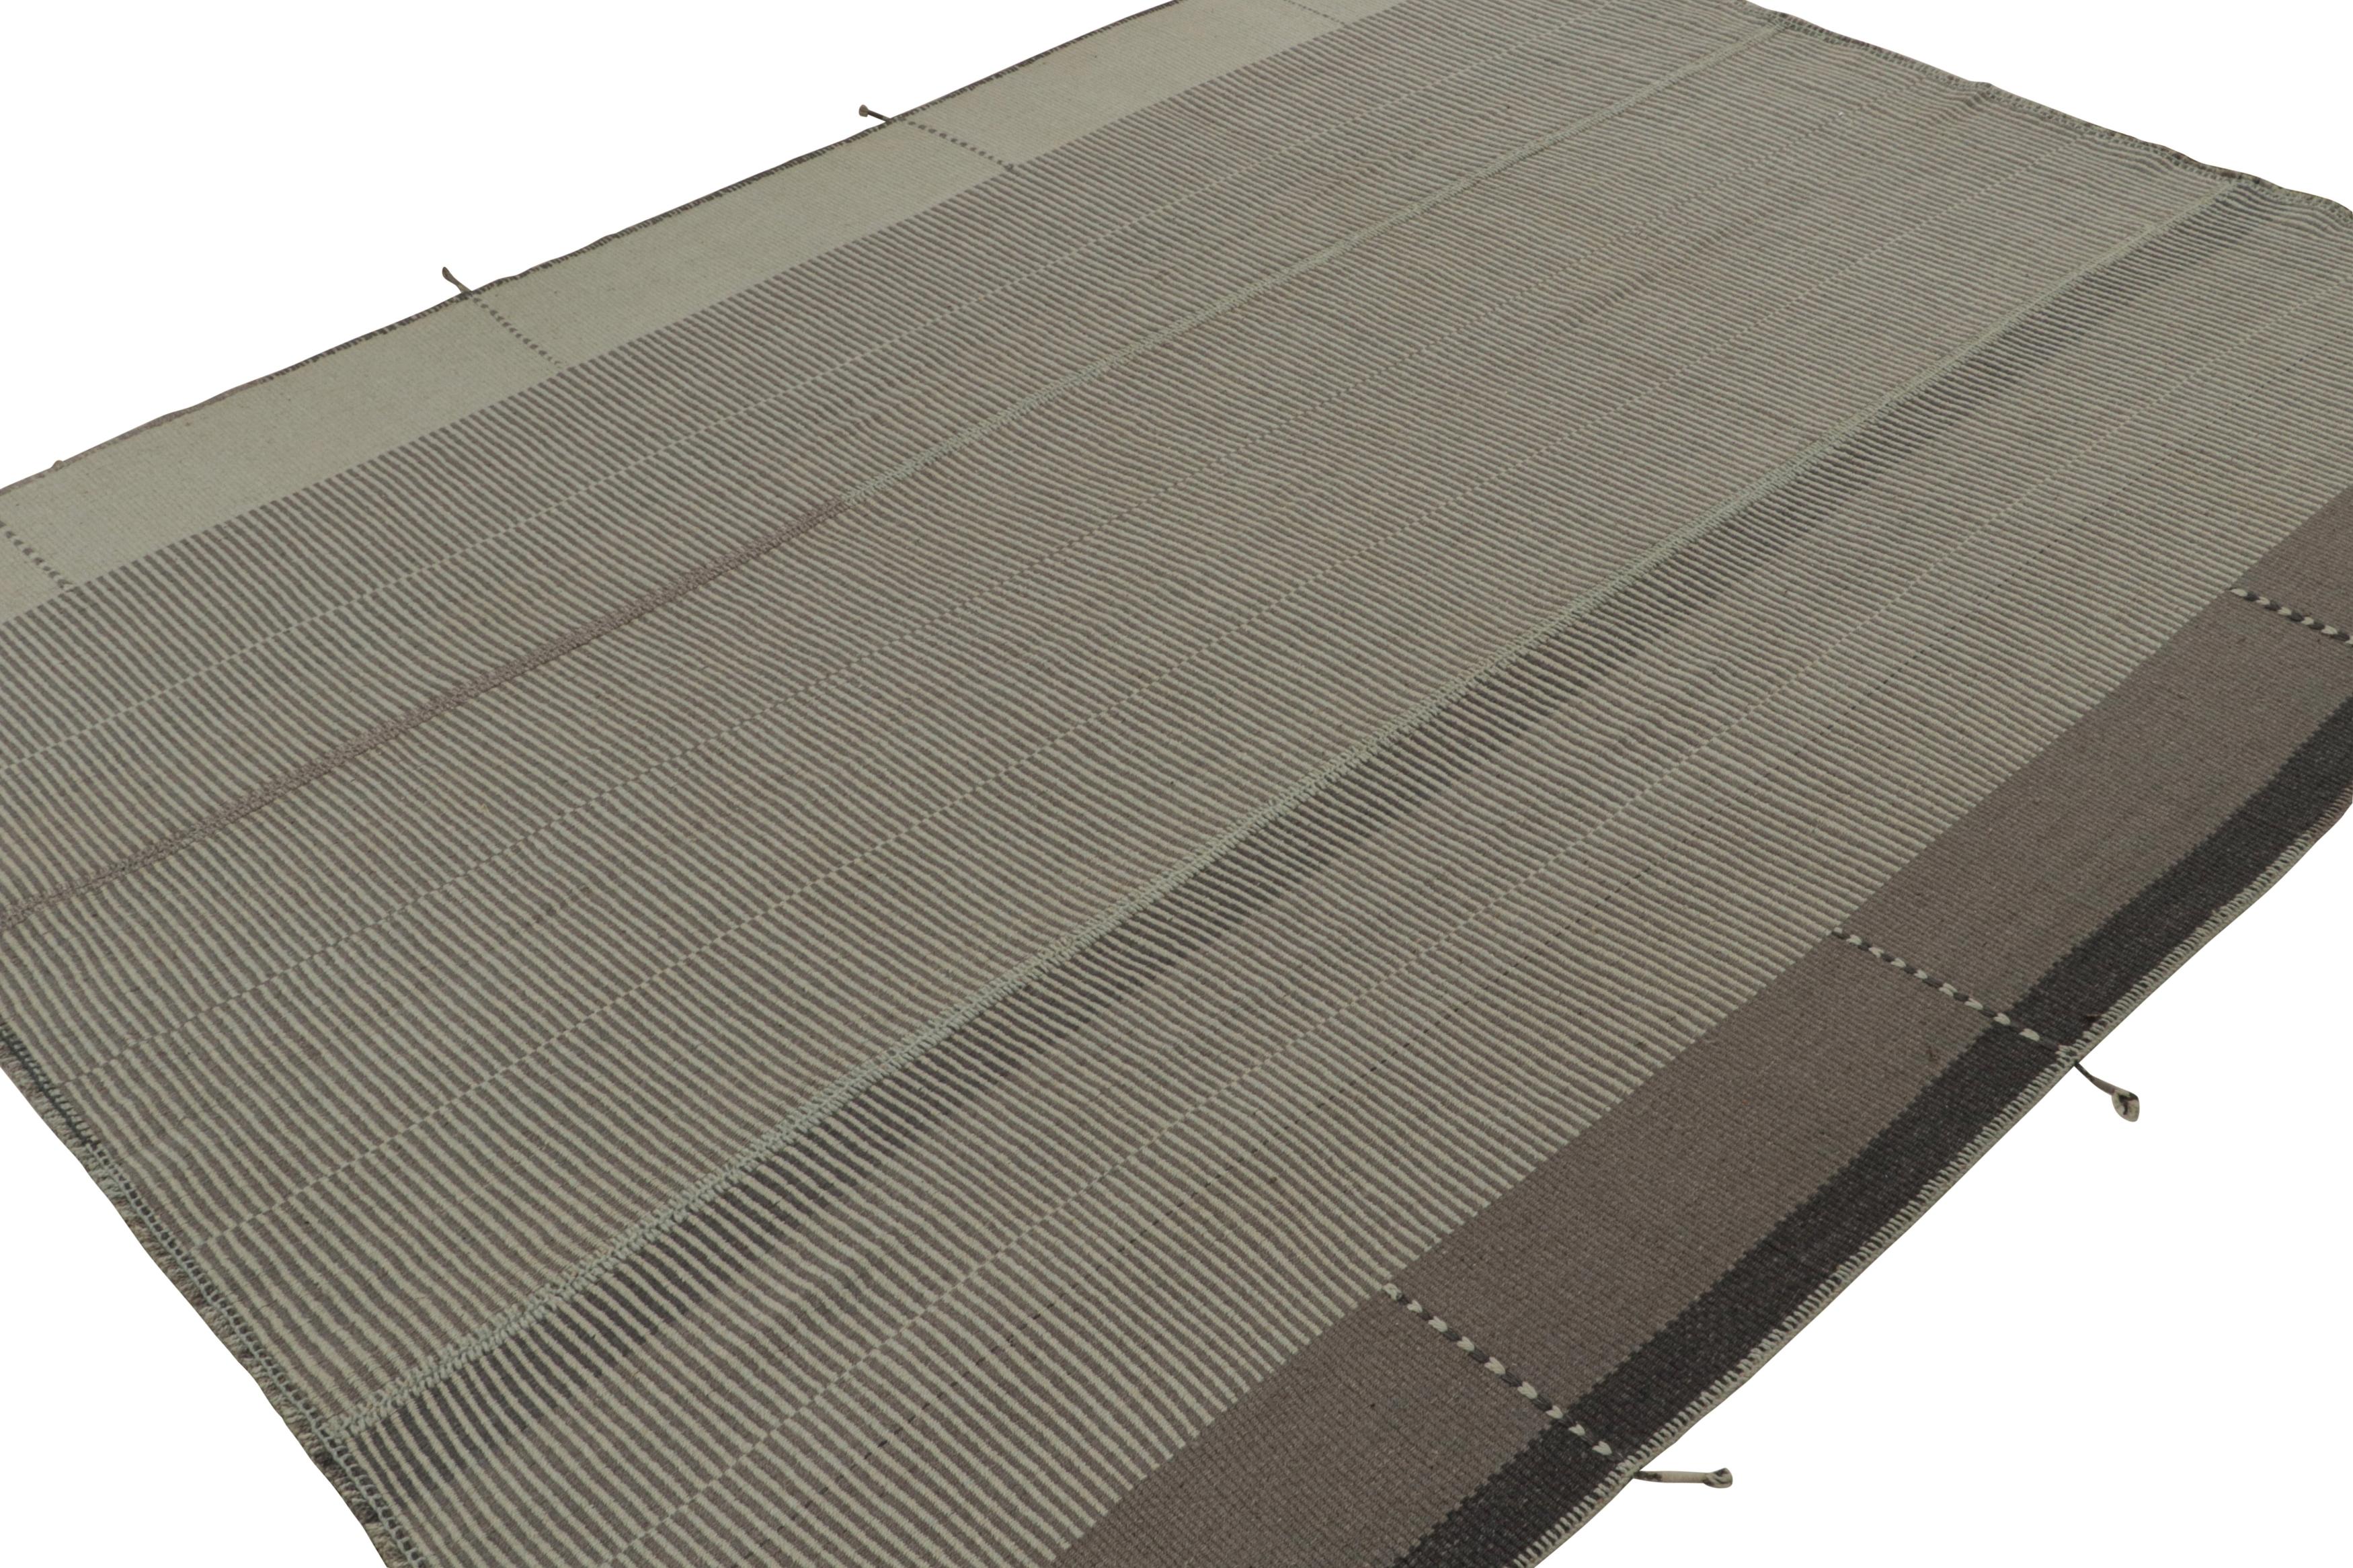 Tissé à la main en laine, un design Kilim 9x12 d'une nouvelle collection inventive de tissage plat contemporain de Rug & Kilim.

Sur le Design : 

Appelé affectueusement 